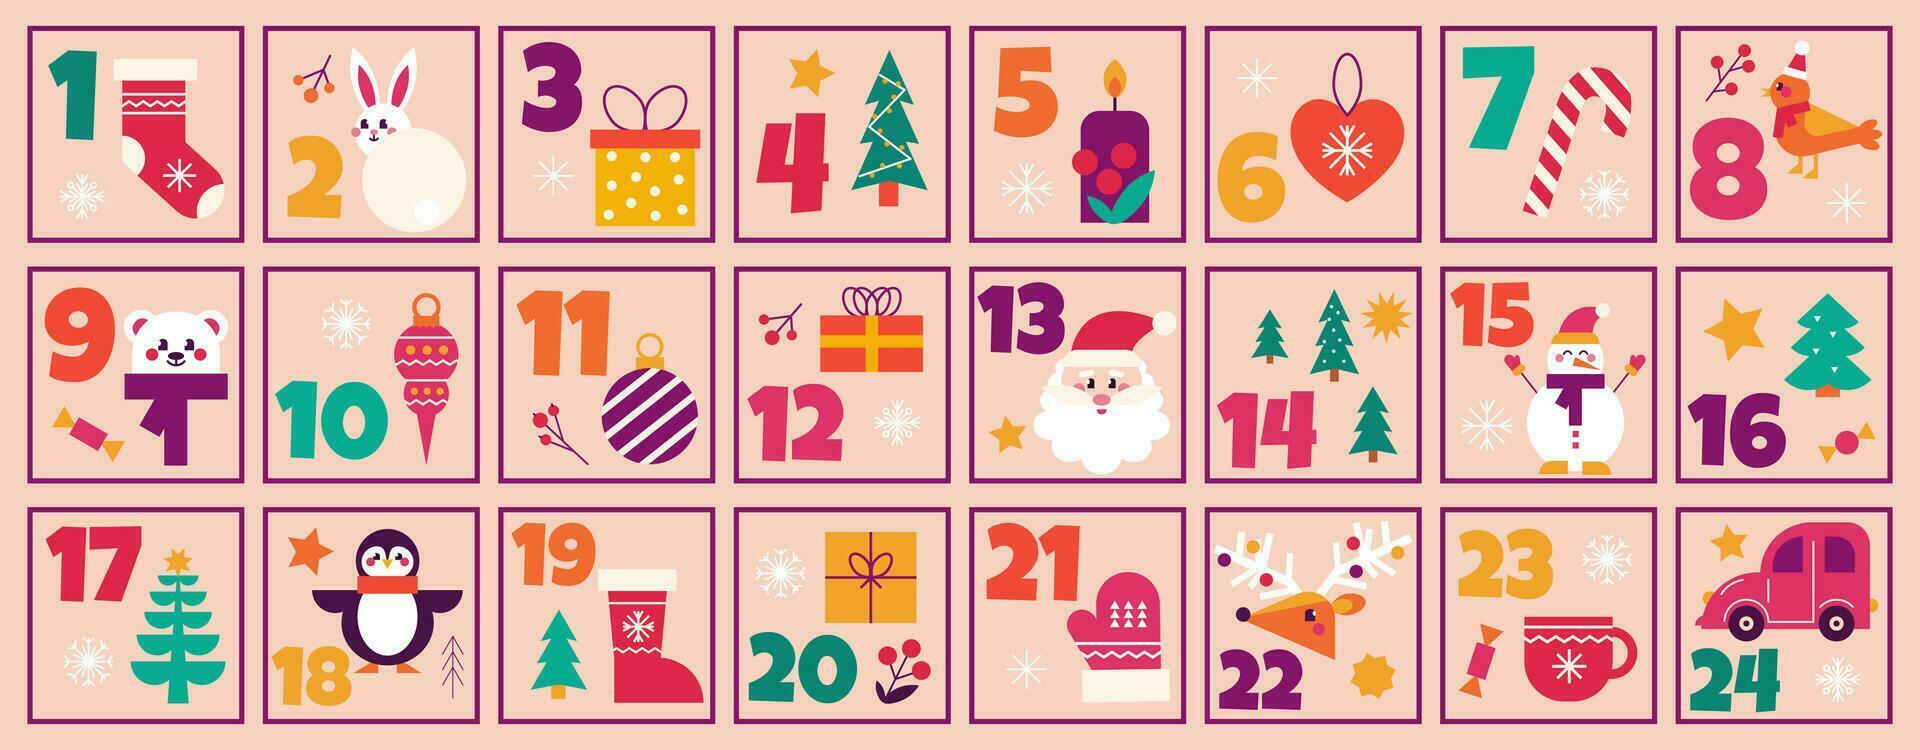 Noël avènement calendrier compte à rebours imprimable numéroté affiche avec Noël éléments et symboles, vecteur plat illustration